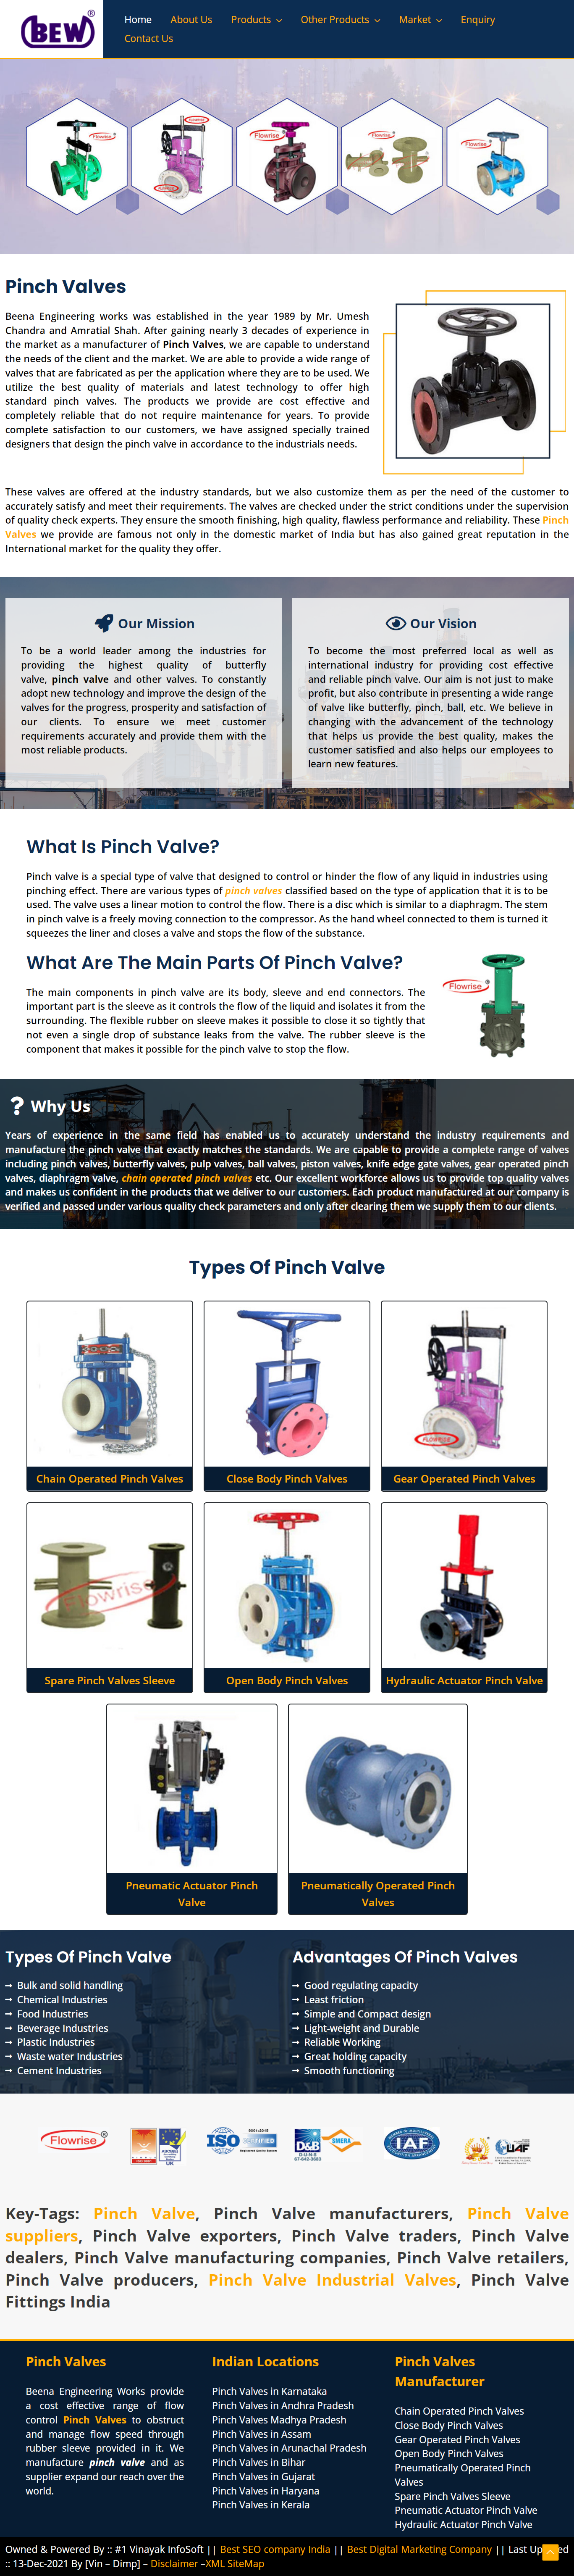 Pinch valves